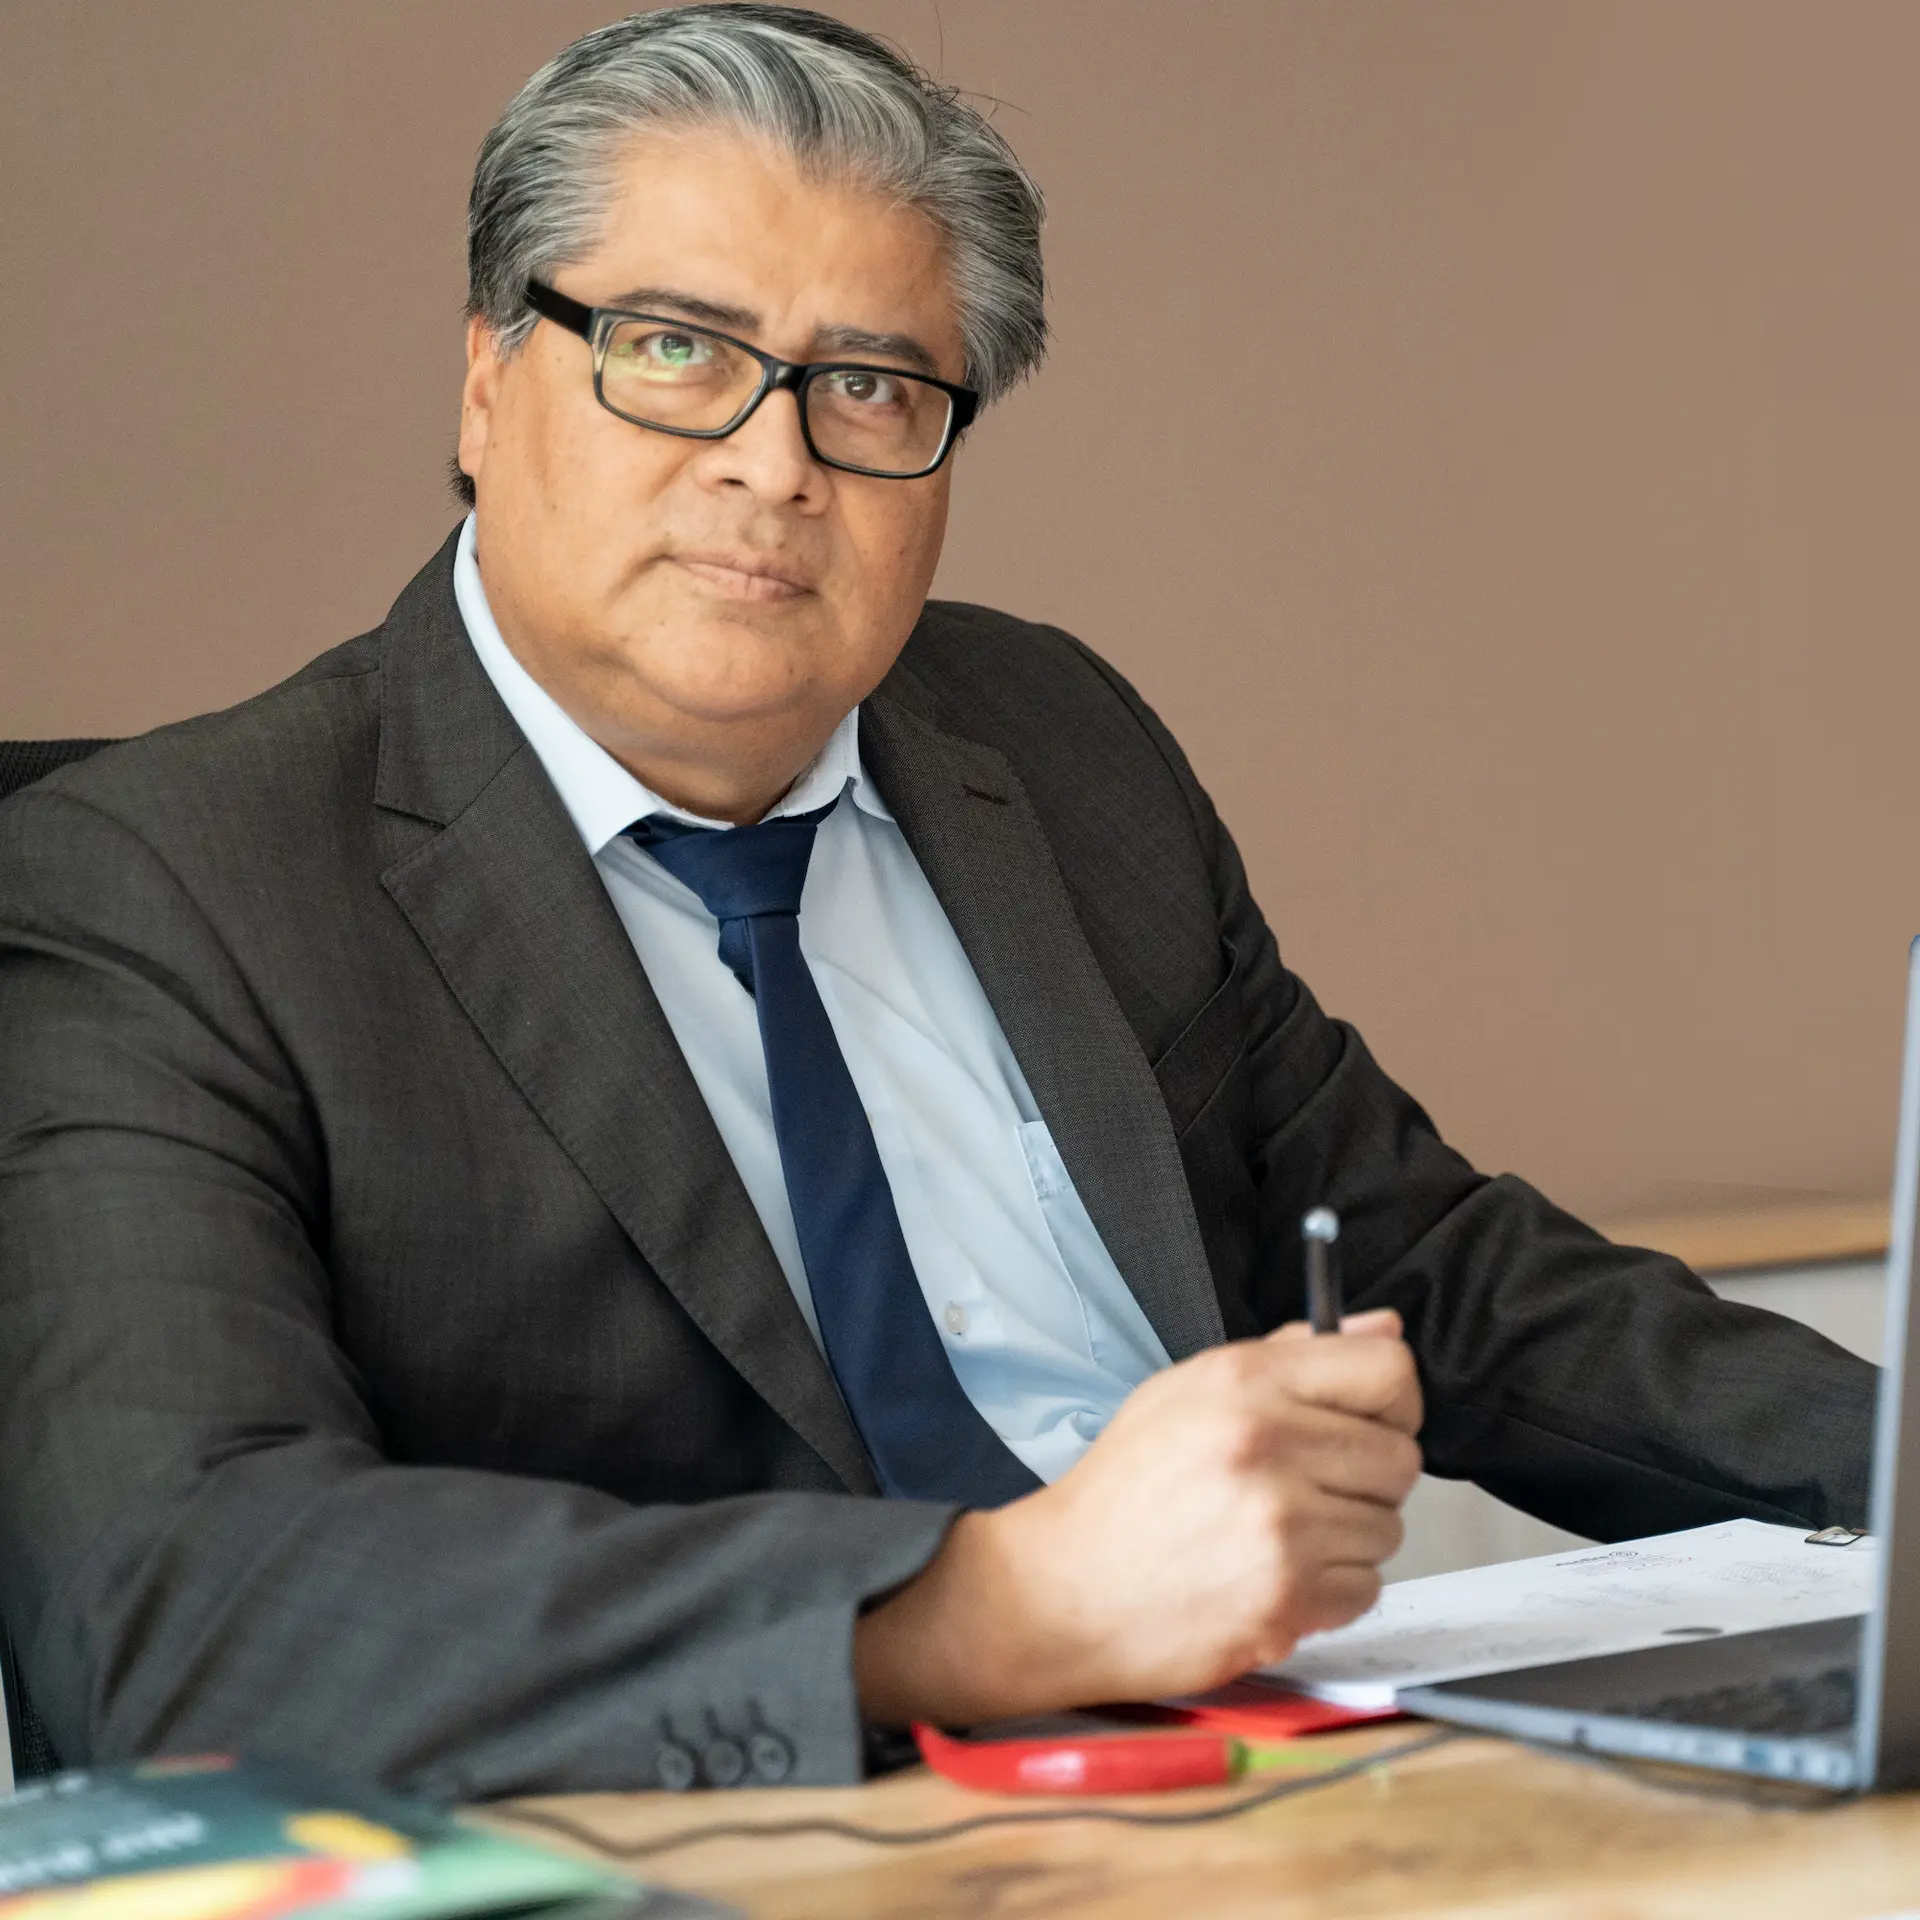 Eng. Roberto Solis - protecfire CEO